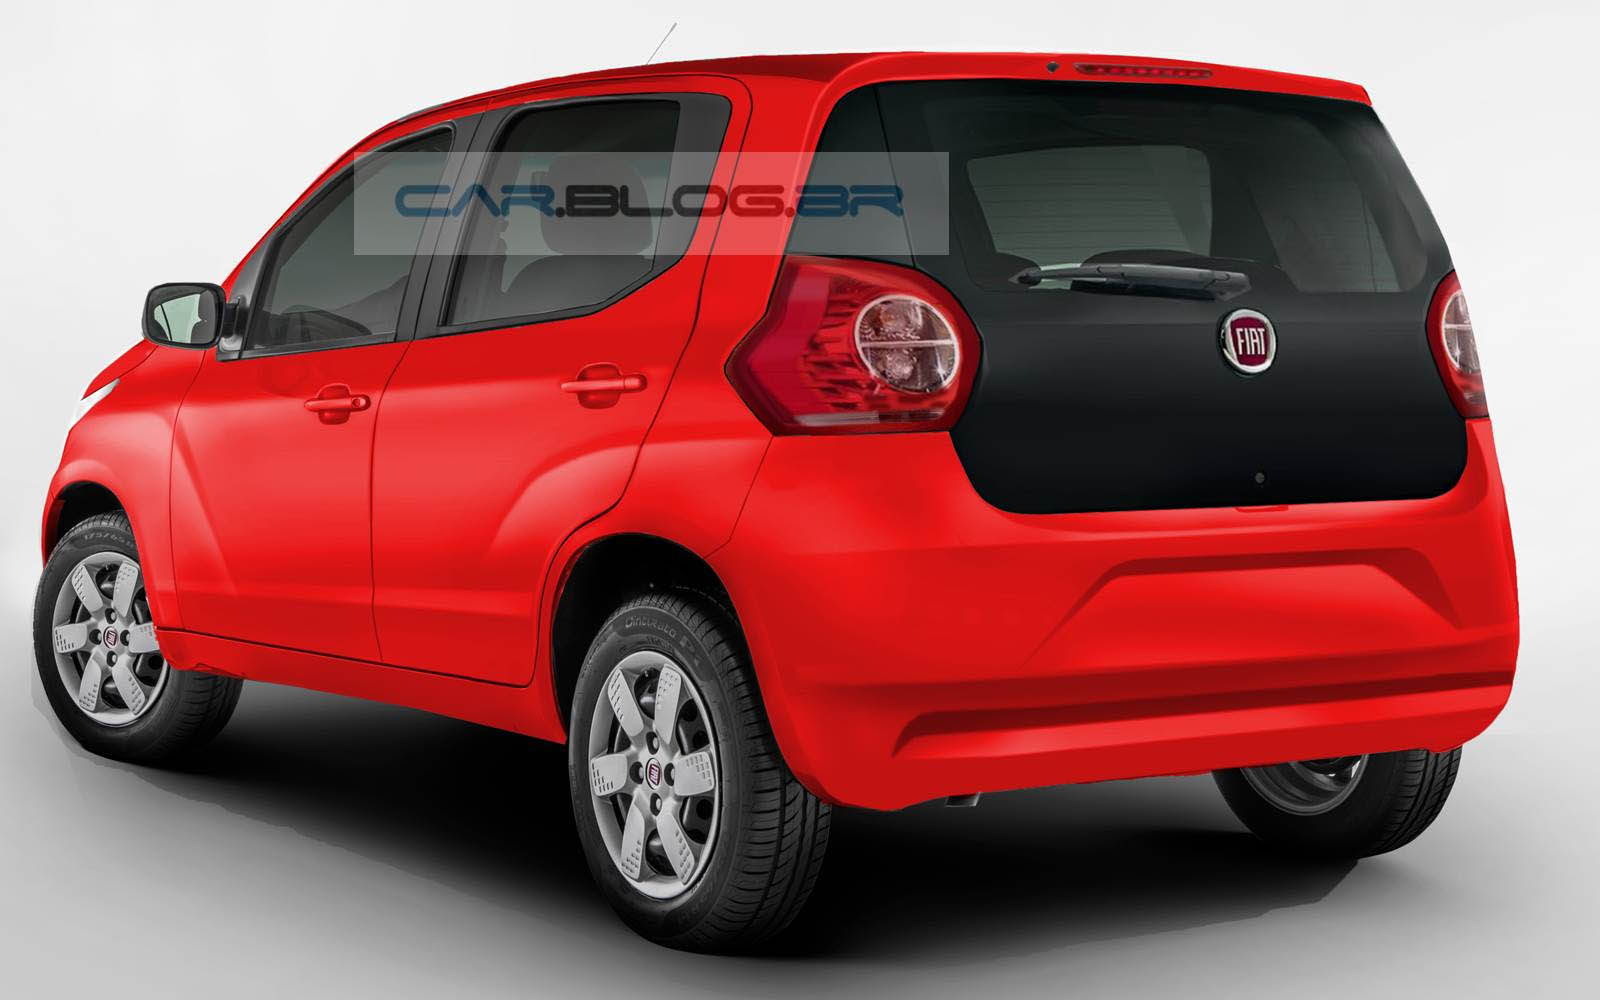 Berita, fiat mobi x1h rear: Prototipe Fiat X1H Akan Diberi Nama Baru Saat Diluncurkan, Namanya Fiat Mobi!